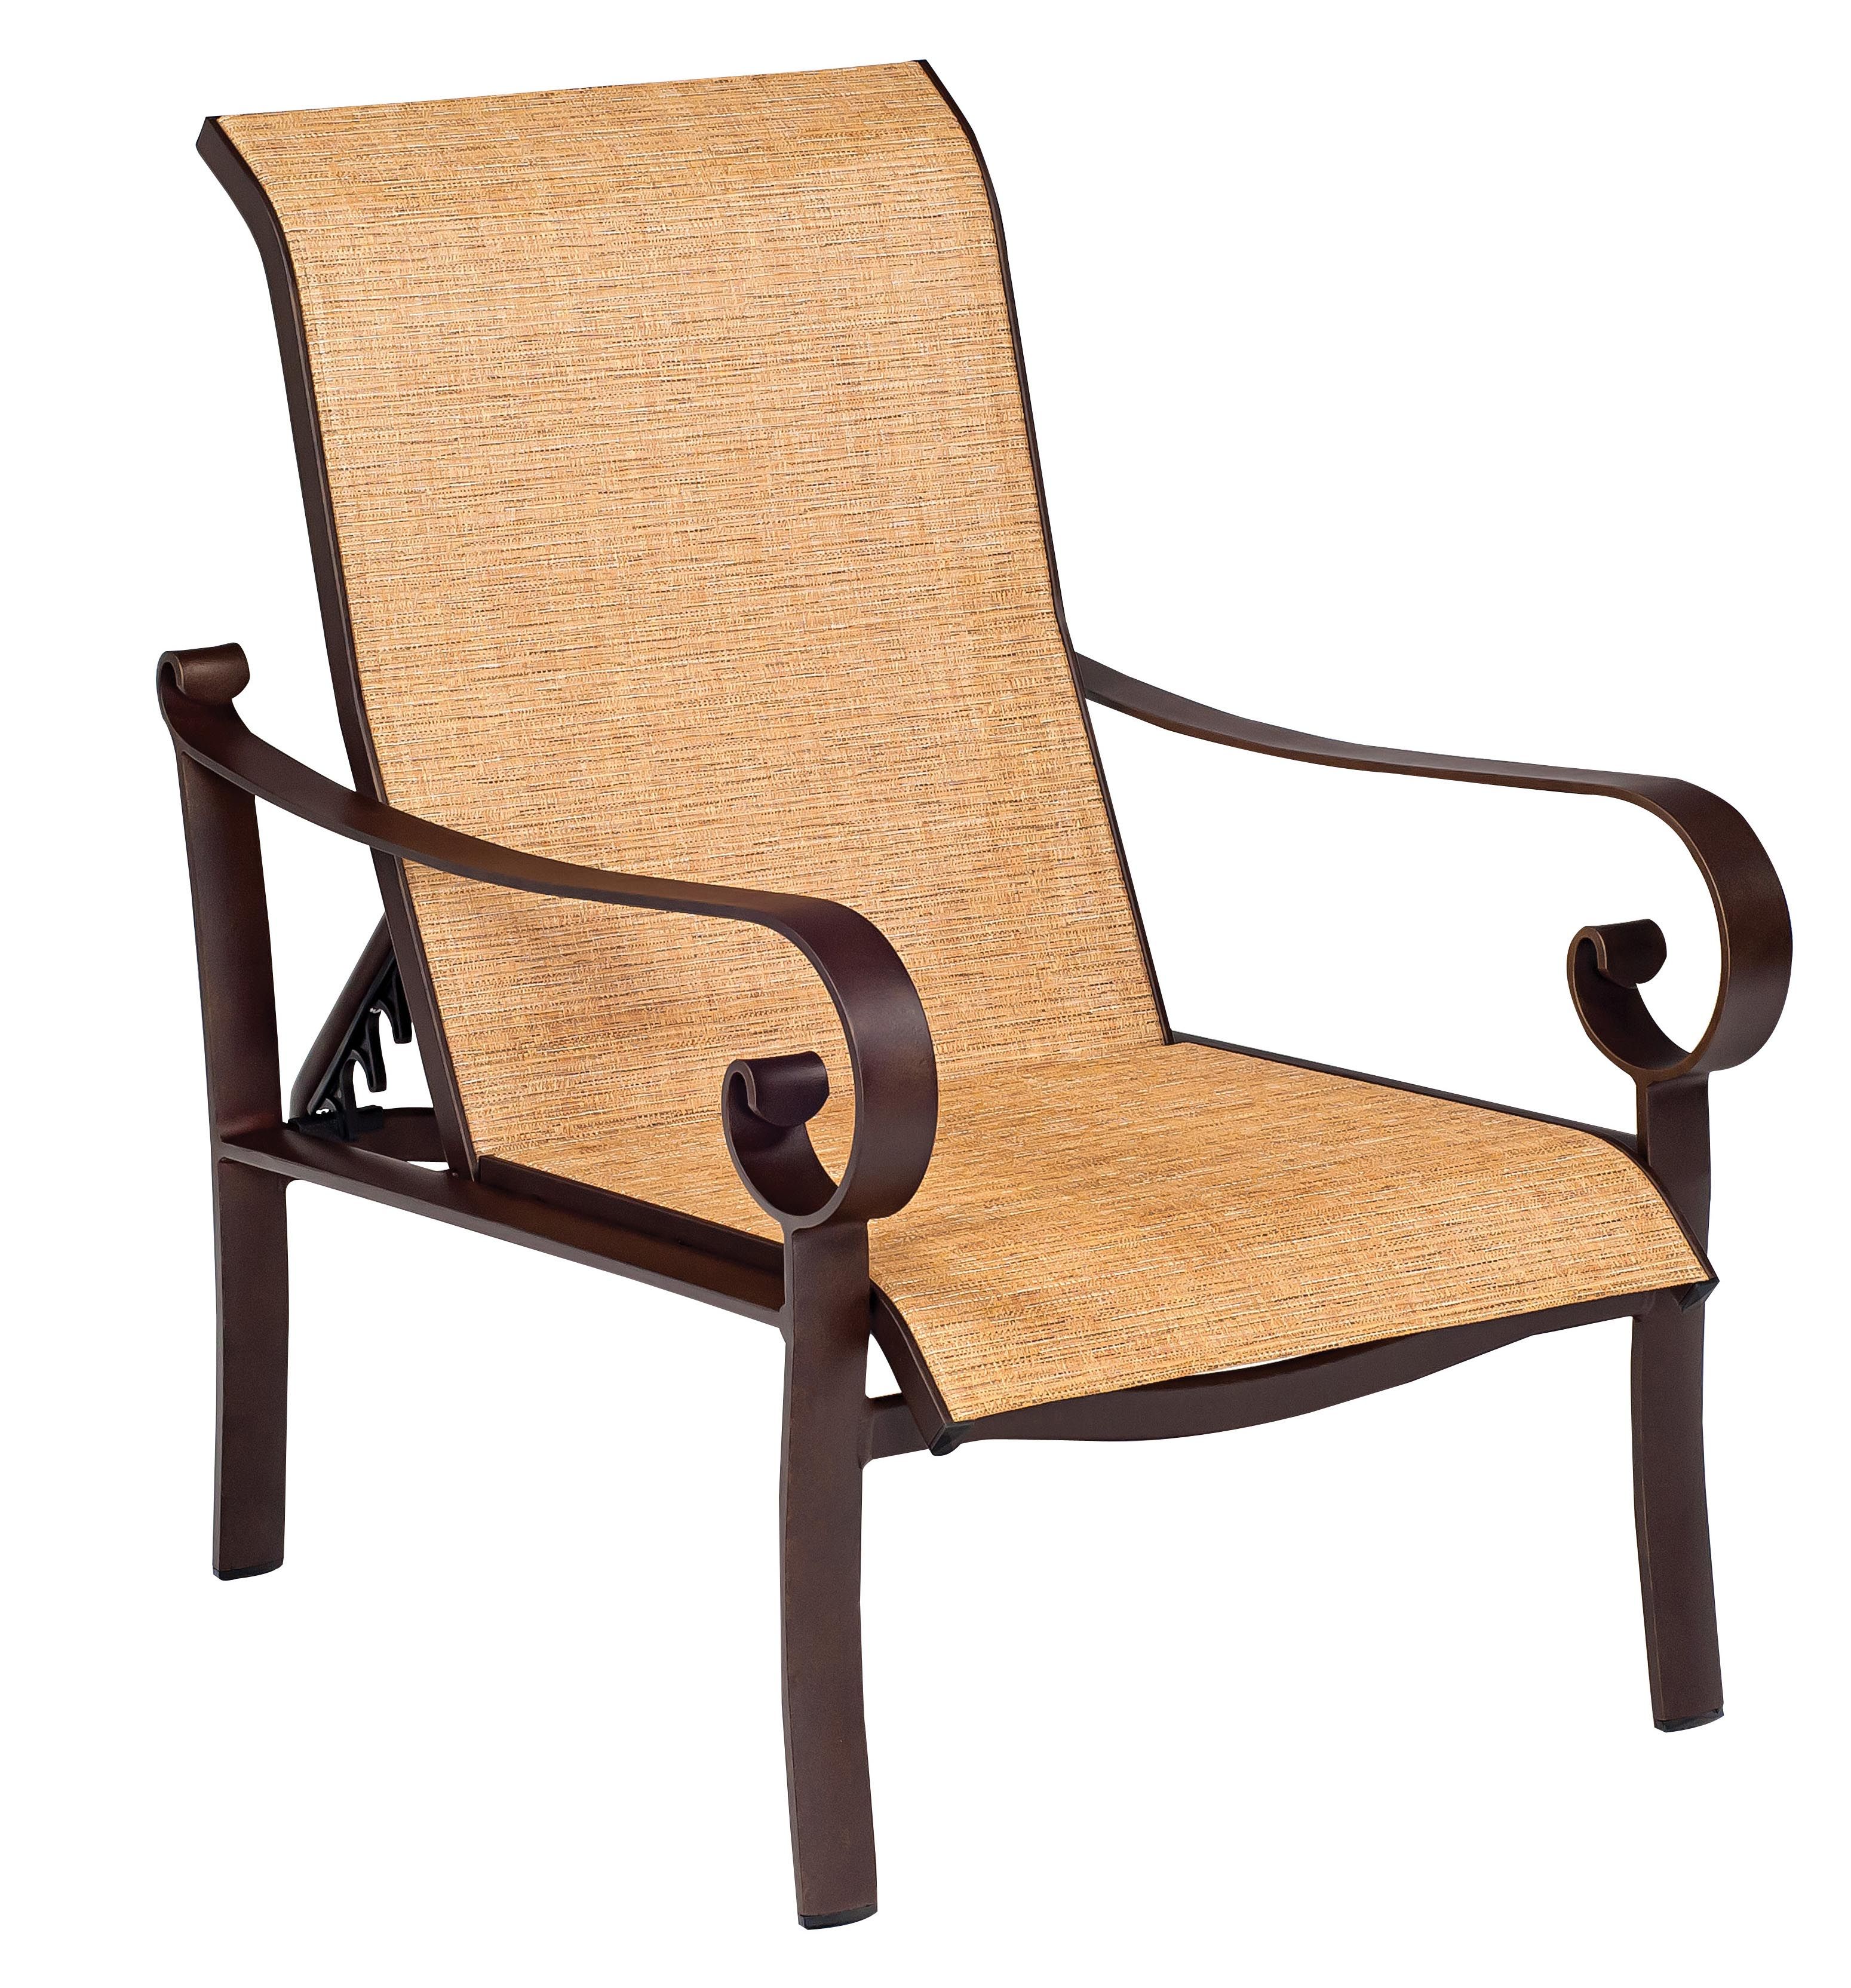 Belden Sling Adjustable Lounge Chair By Woodard